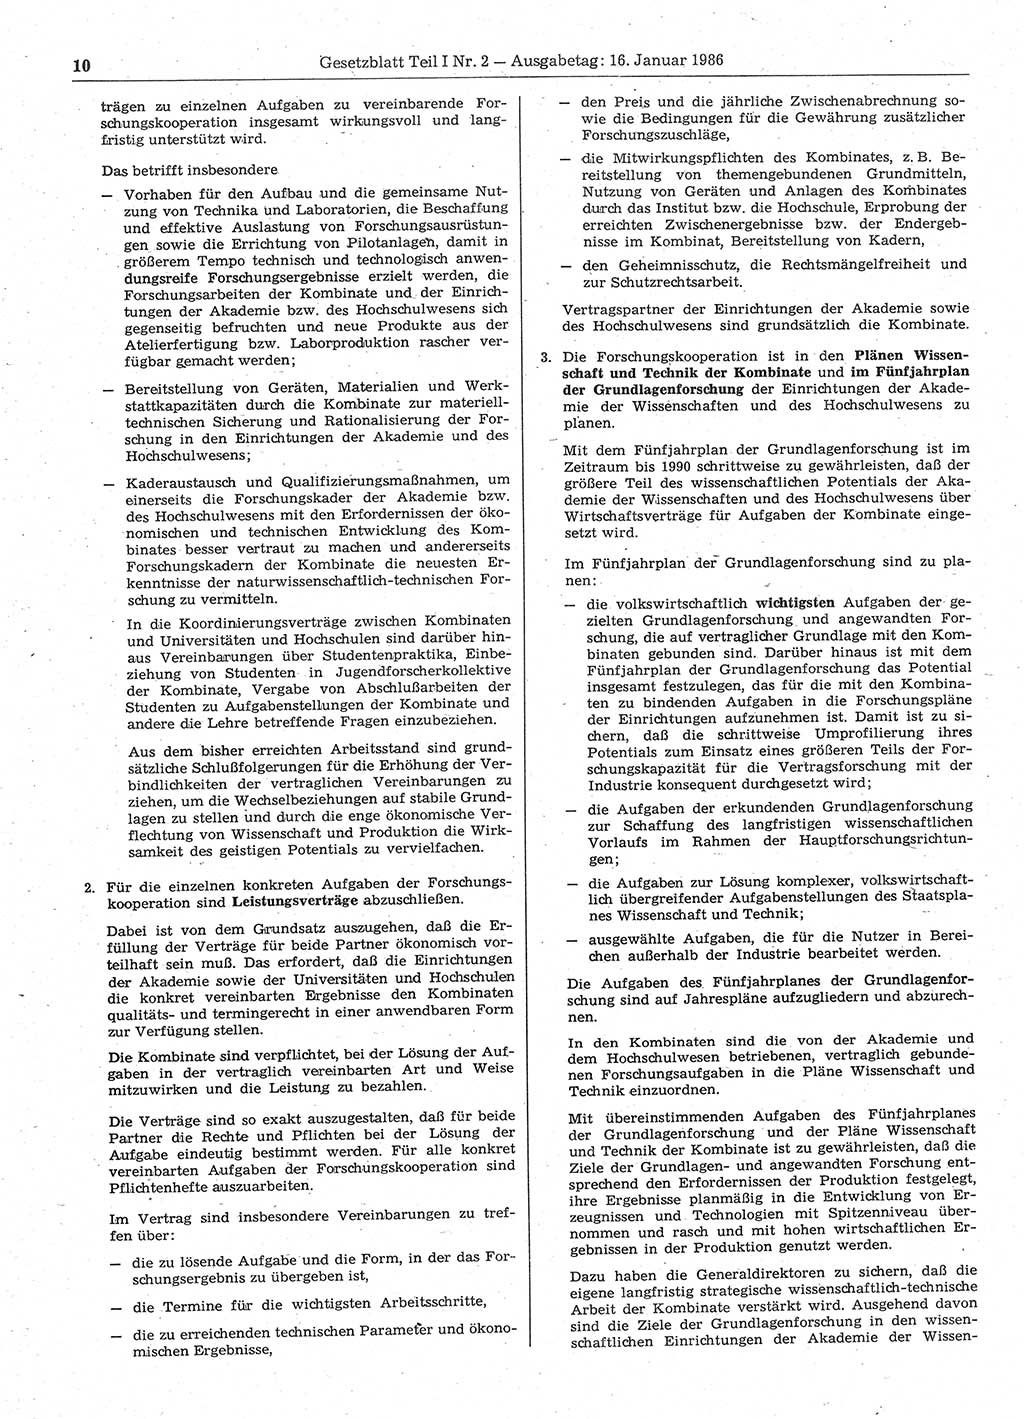 Gesetzblatt (GBl.) der Deutschen Demokratischen Republik (DDR) Teil Ⅰ 1986, Seite 10 (GBl. DDR Ⅰ 1986, S. 10)